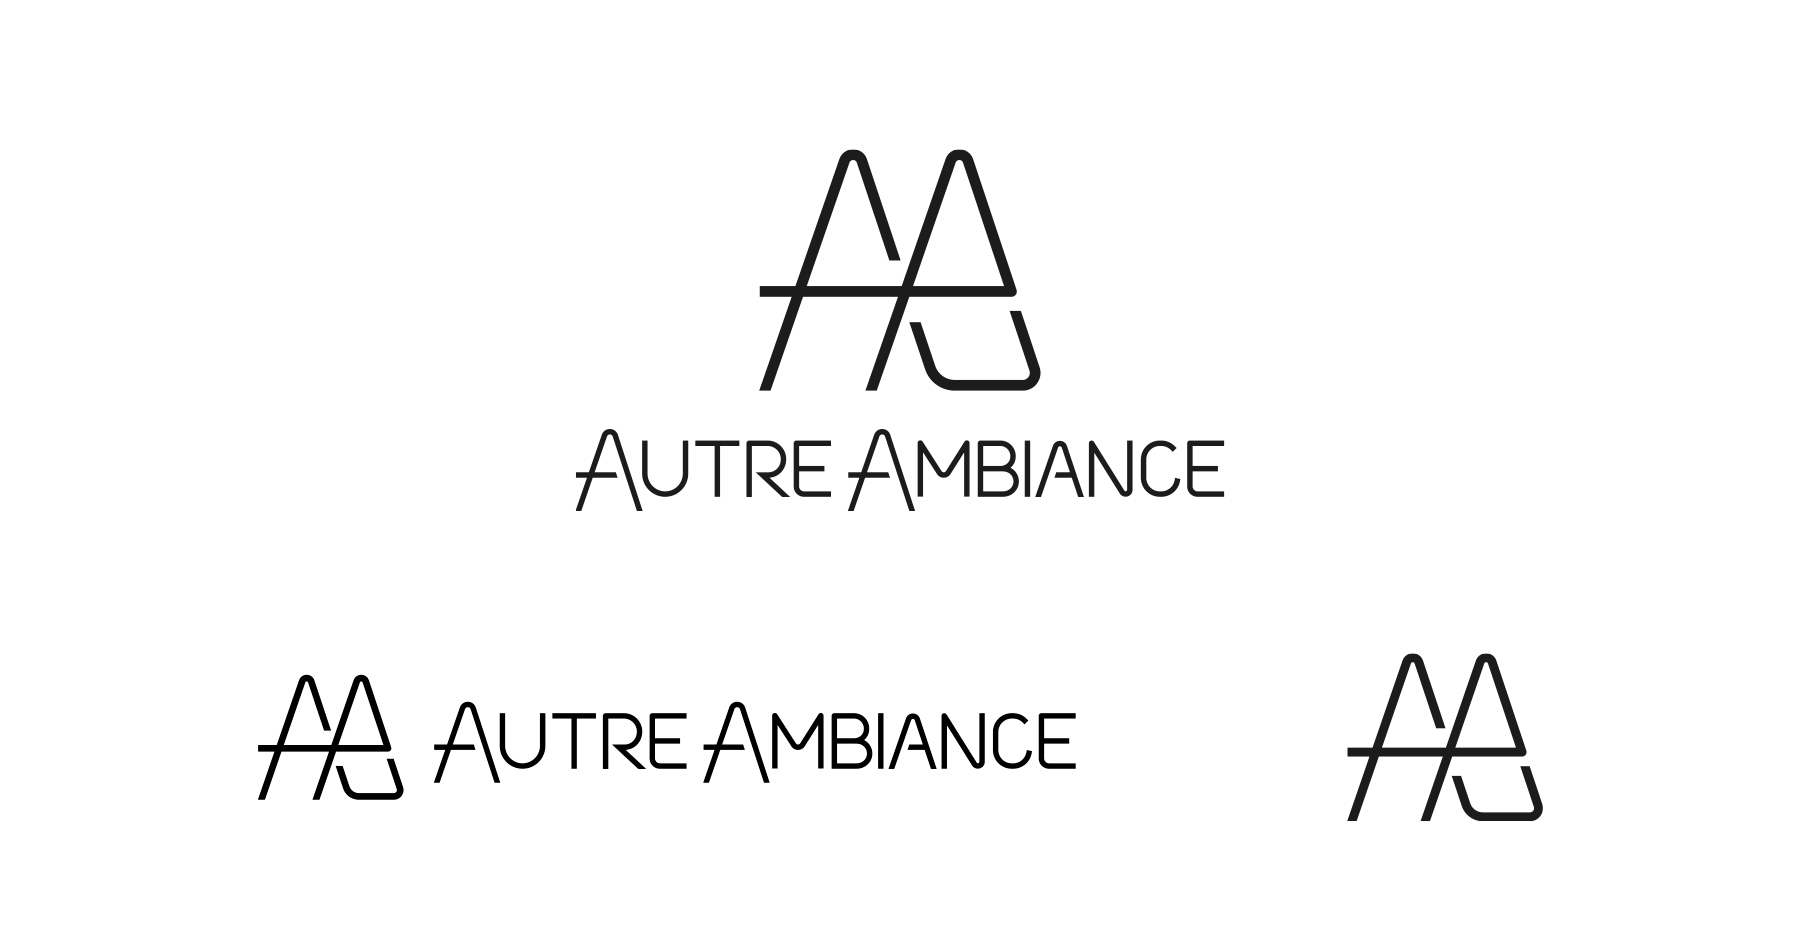 Les 3 versions du logo Autre Ambiance